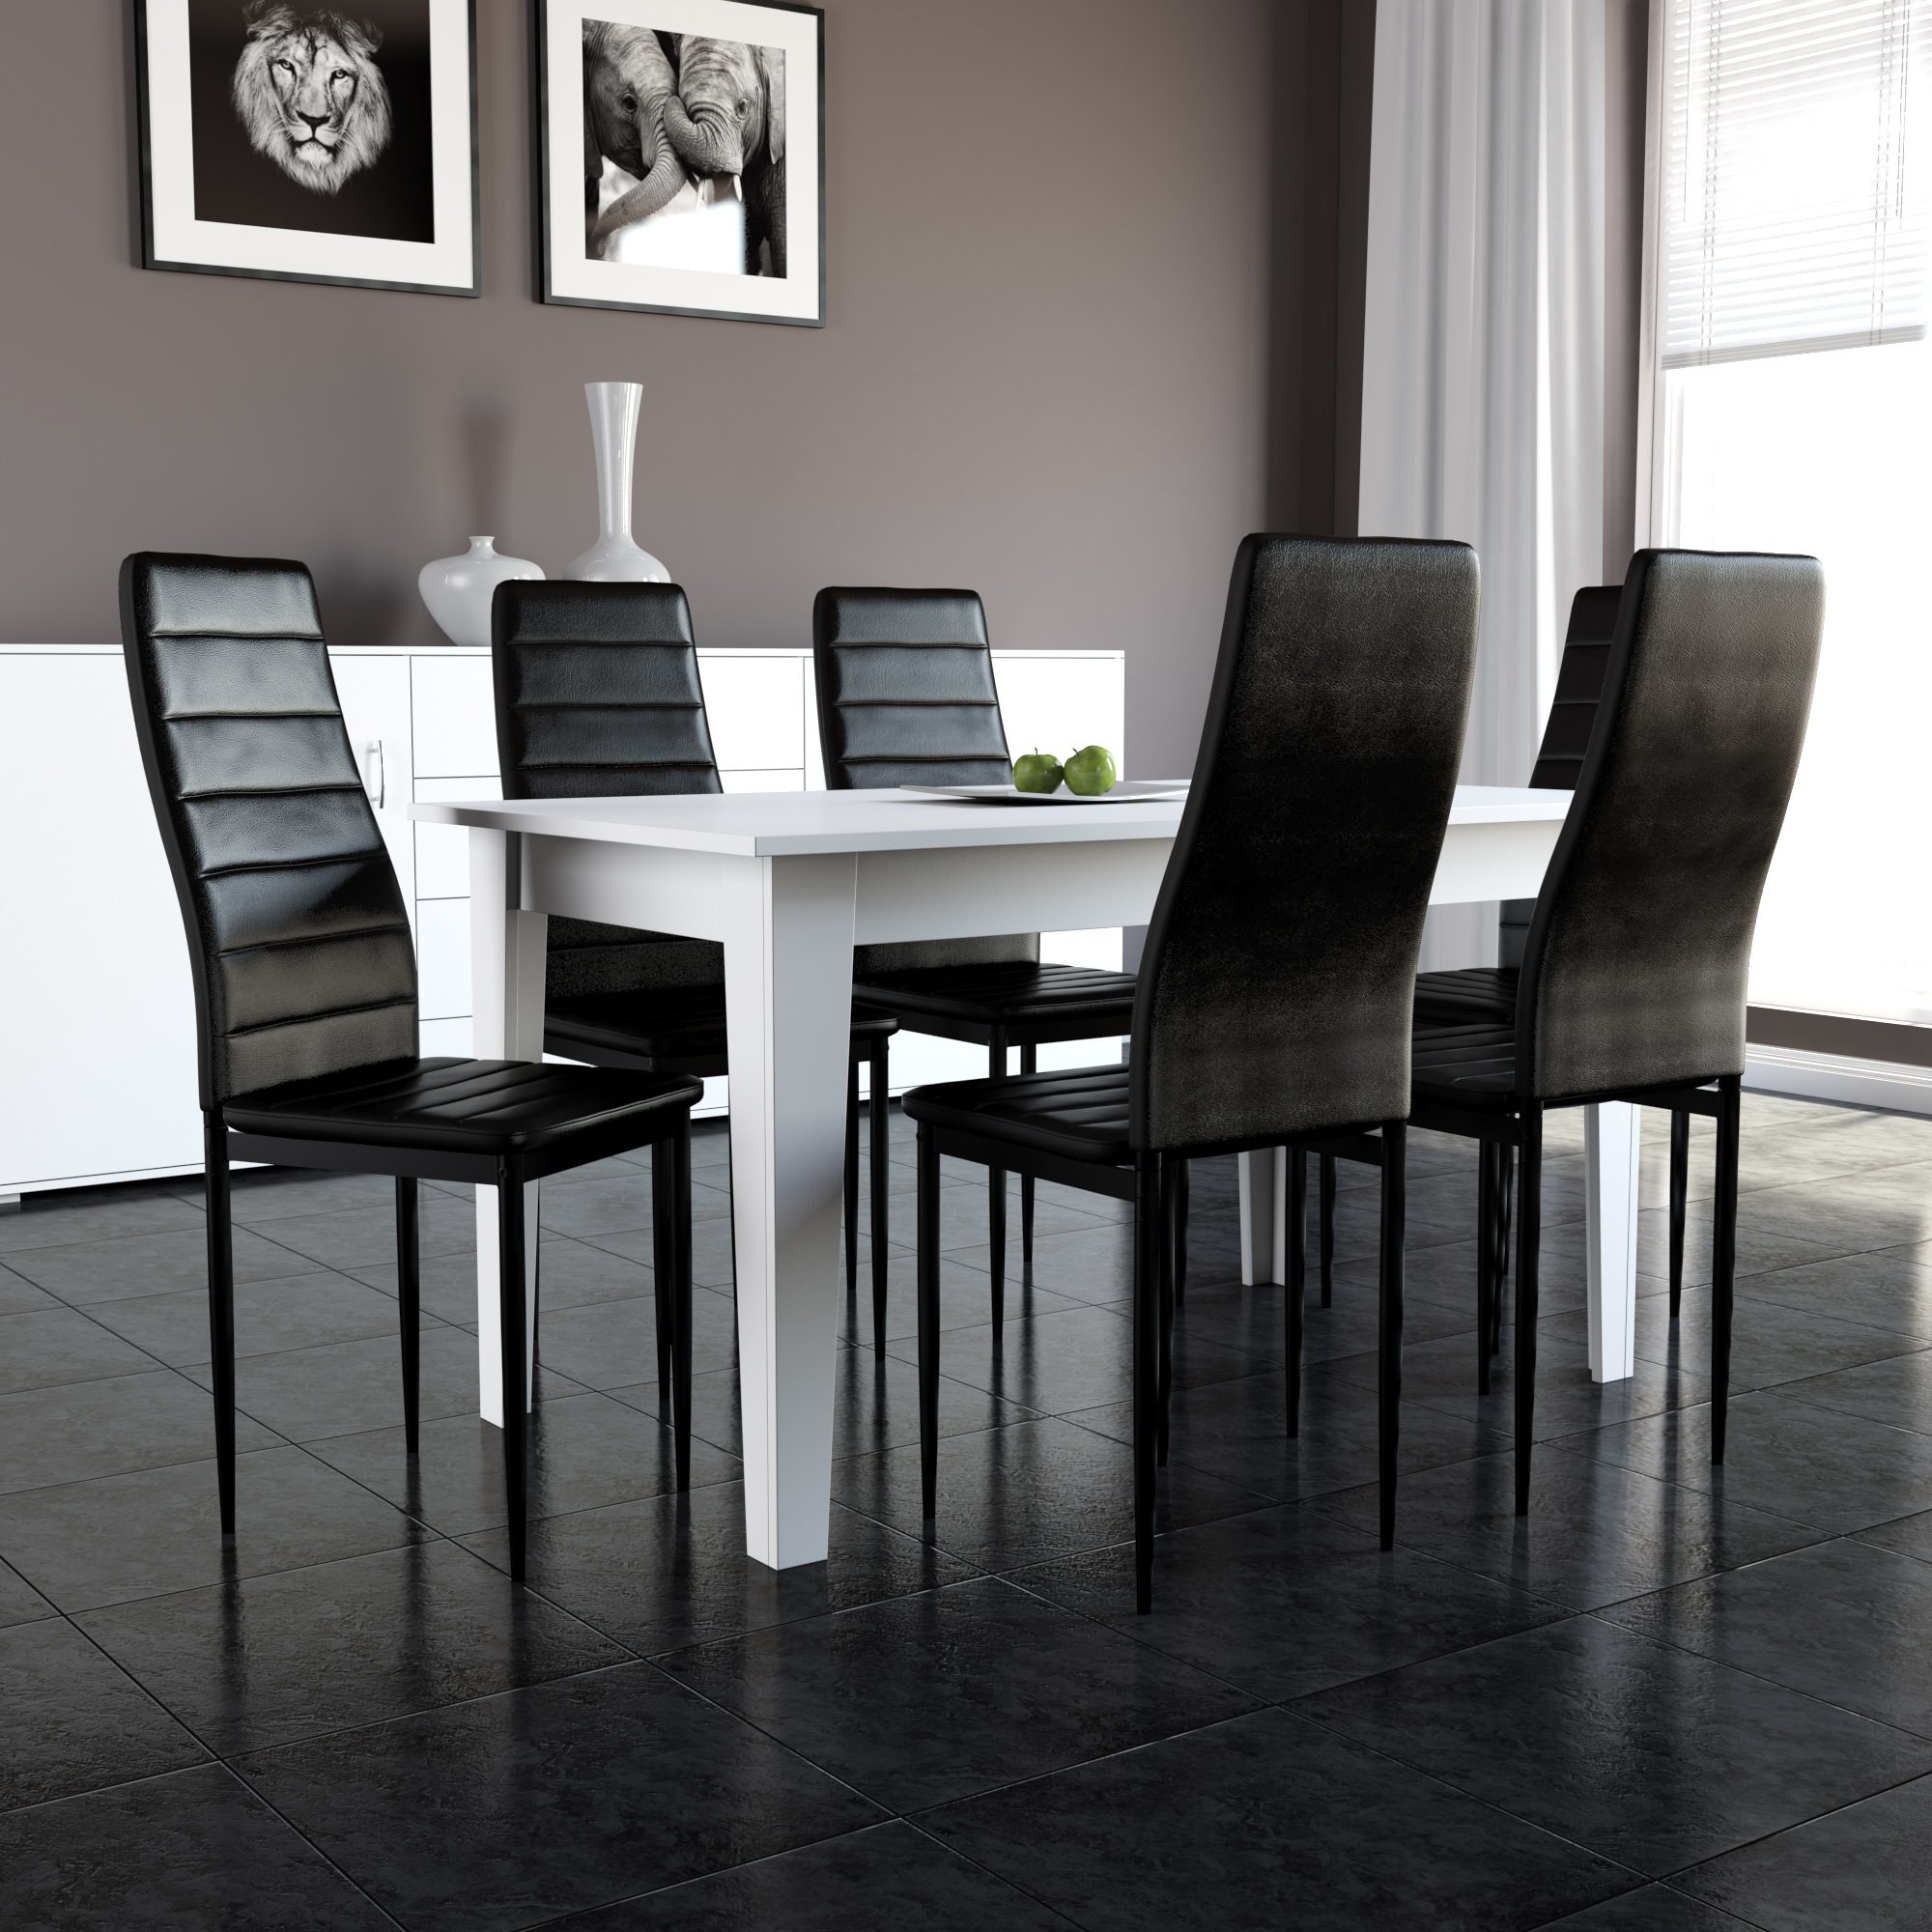 Черный стол на кухне. Стол обеденный Sagrada td 1397. Черные стулья для кухни в интерьере. Столы и стулья в интерьере. Кухонный стол и стулья.